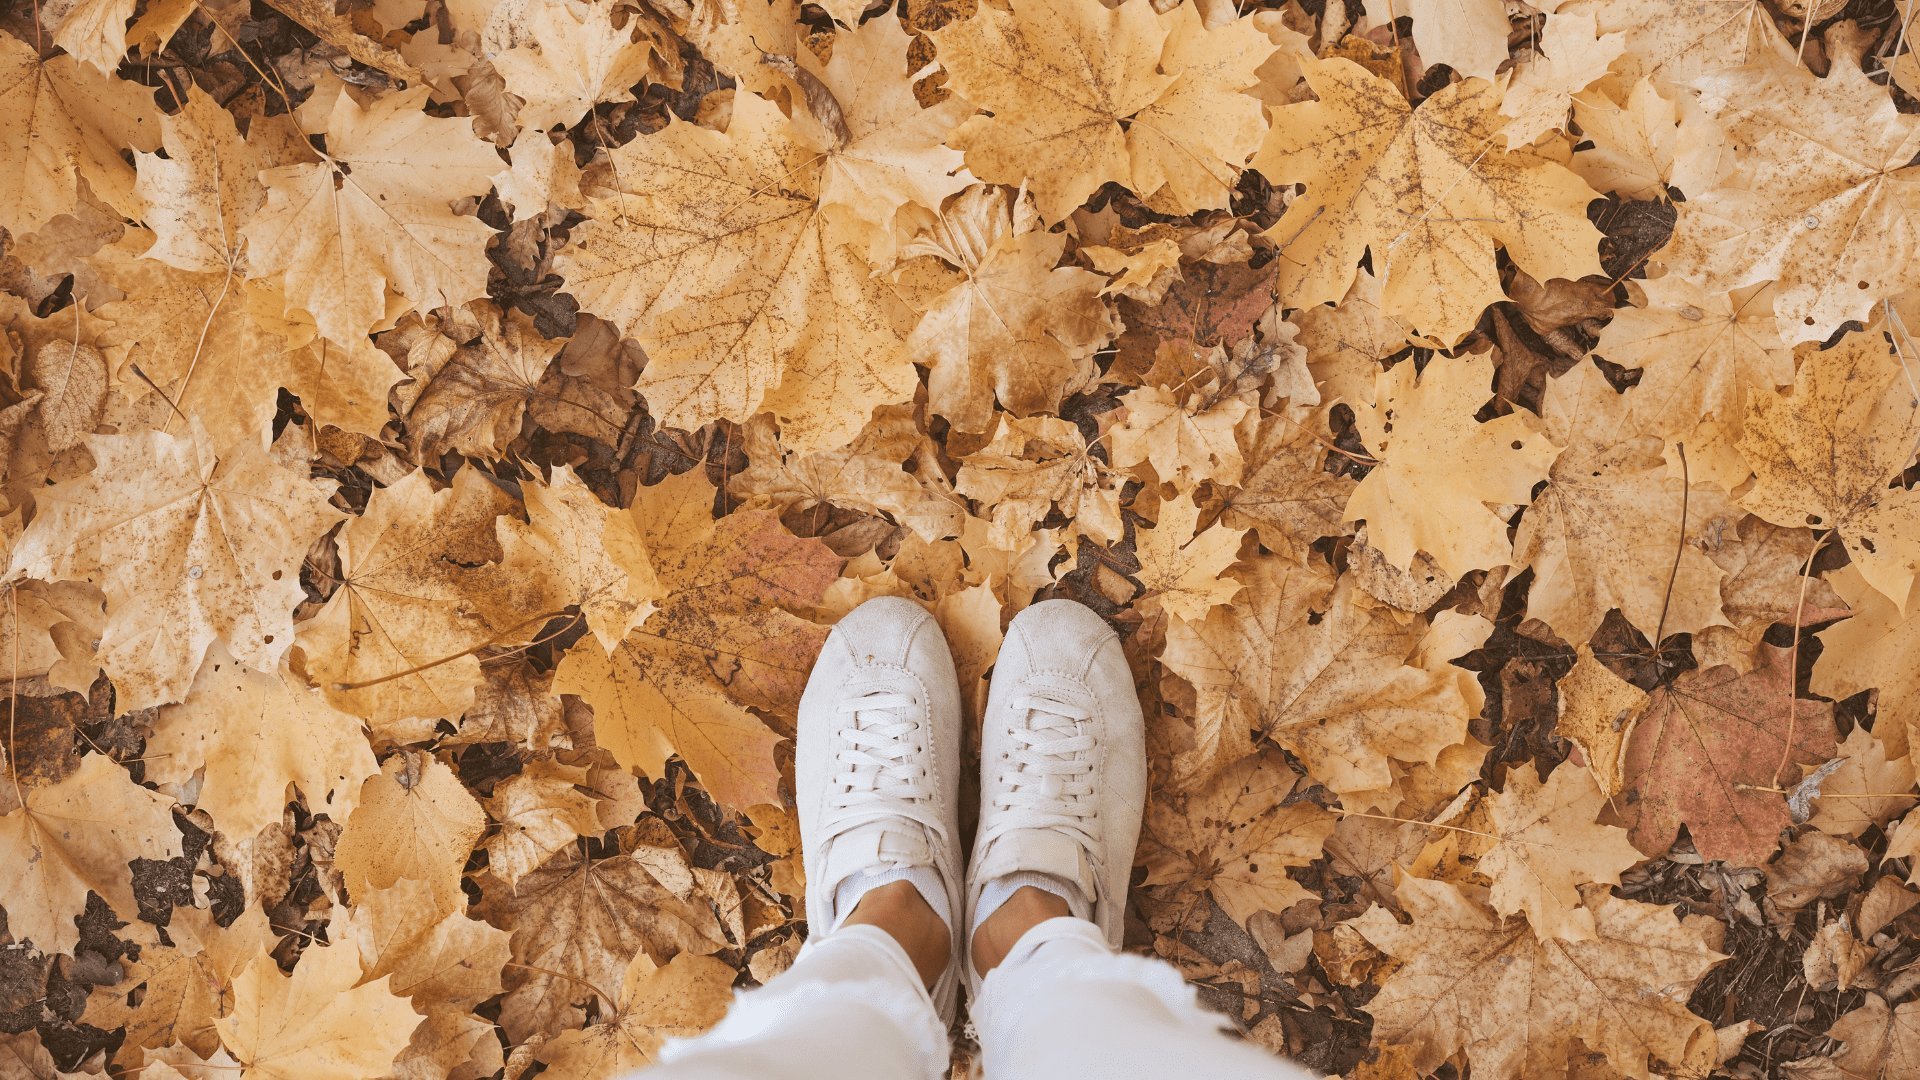 Pés de garota sobre folhas secas caídas no chão